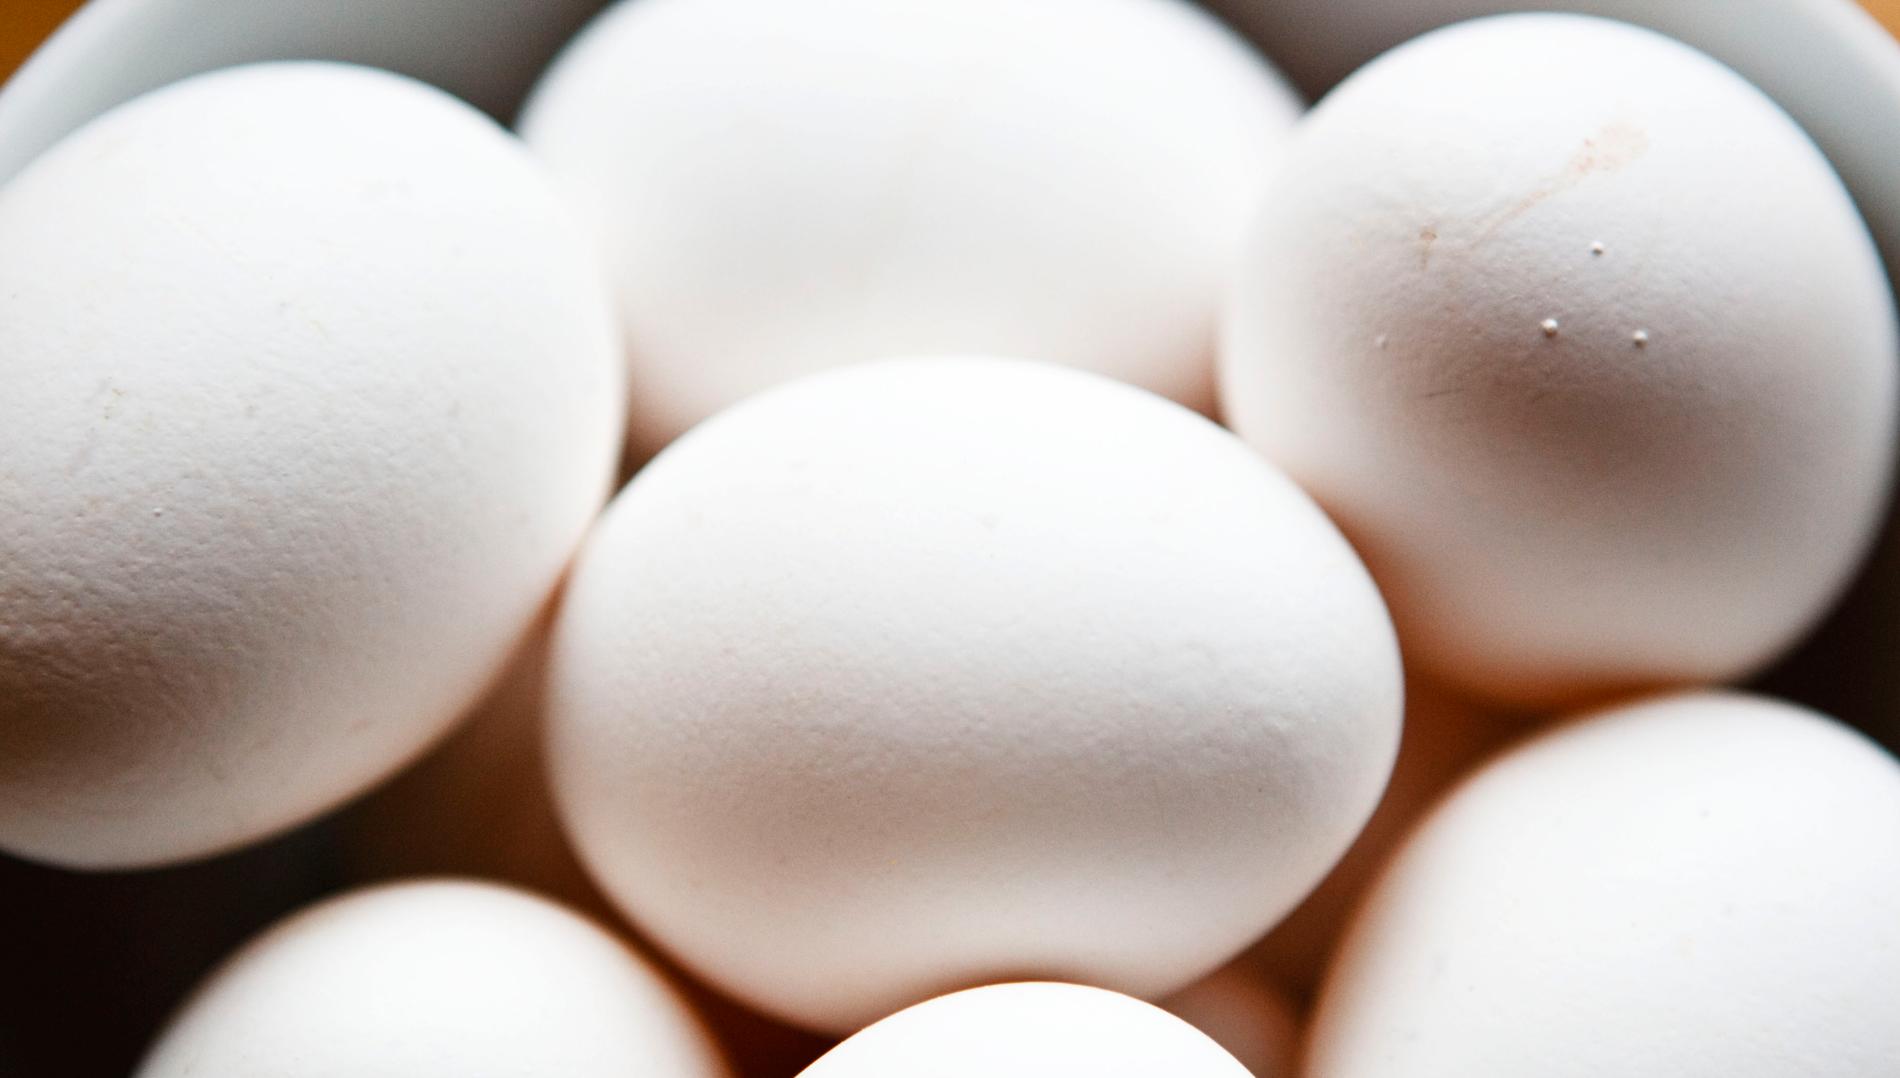 Ägg återkallas efter misstankar om salmonella. Arkivbild.